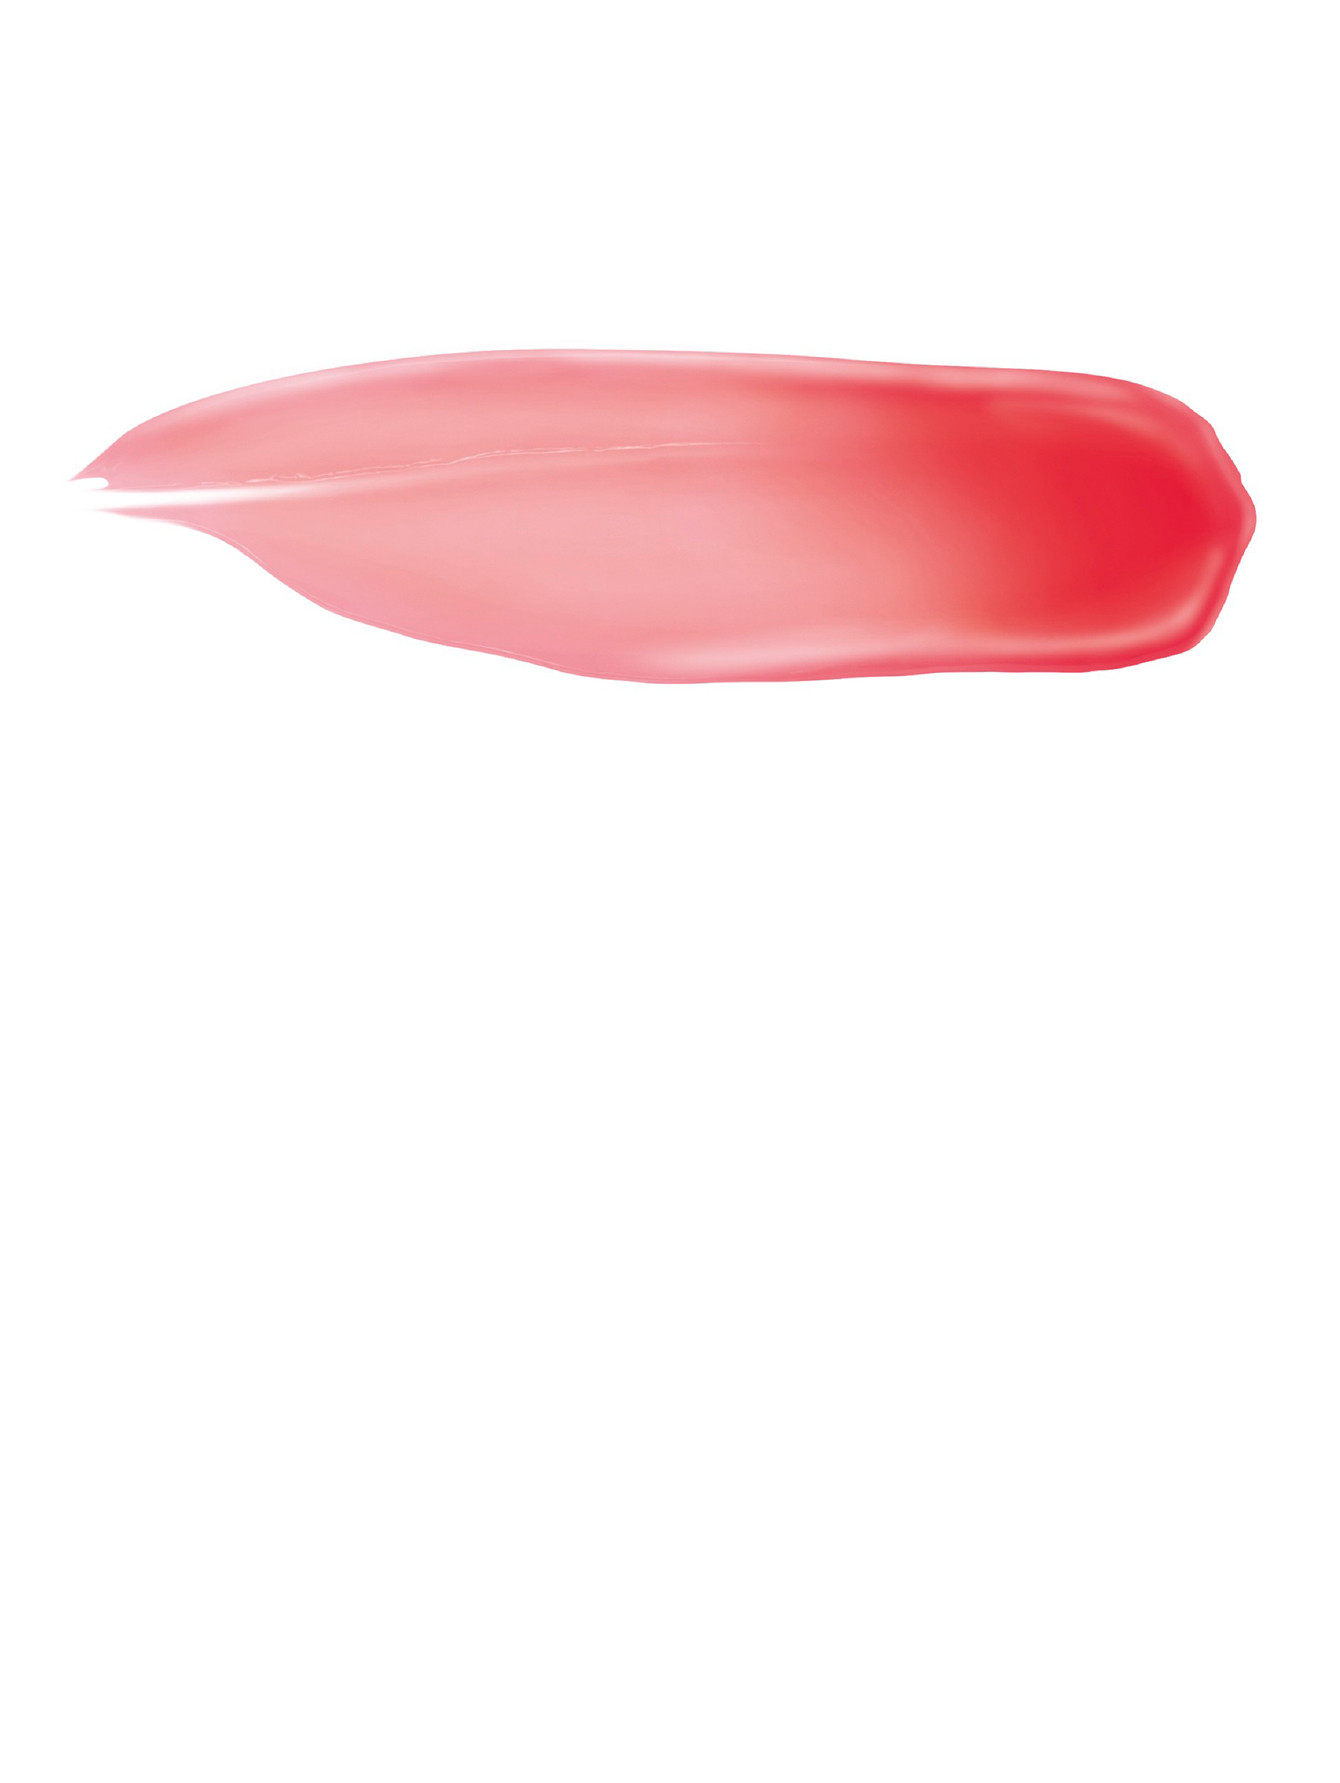 Бальзам для губ LE ROSE PERFECTO, 301 успокаивающий красный, 2.2 г - Обтравка1